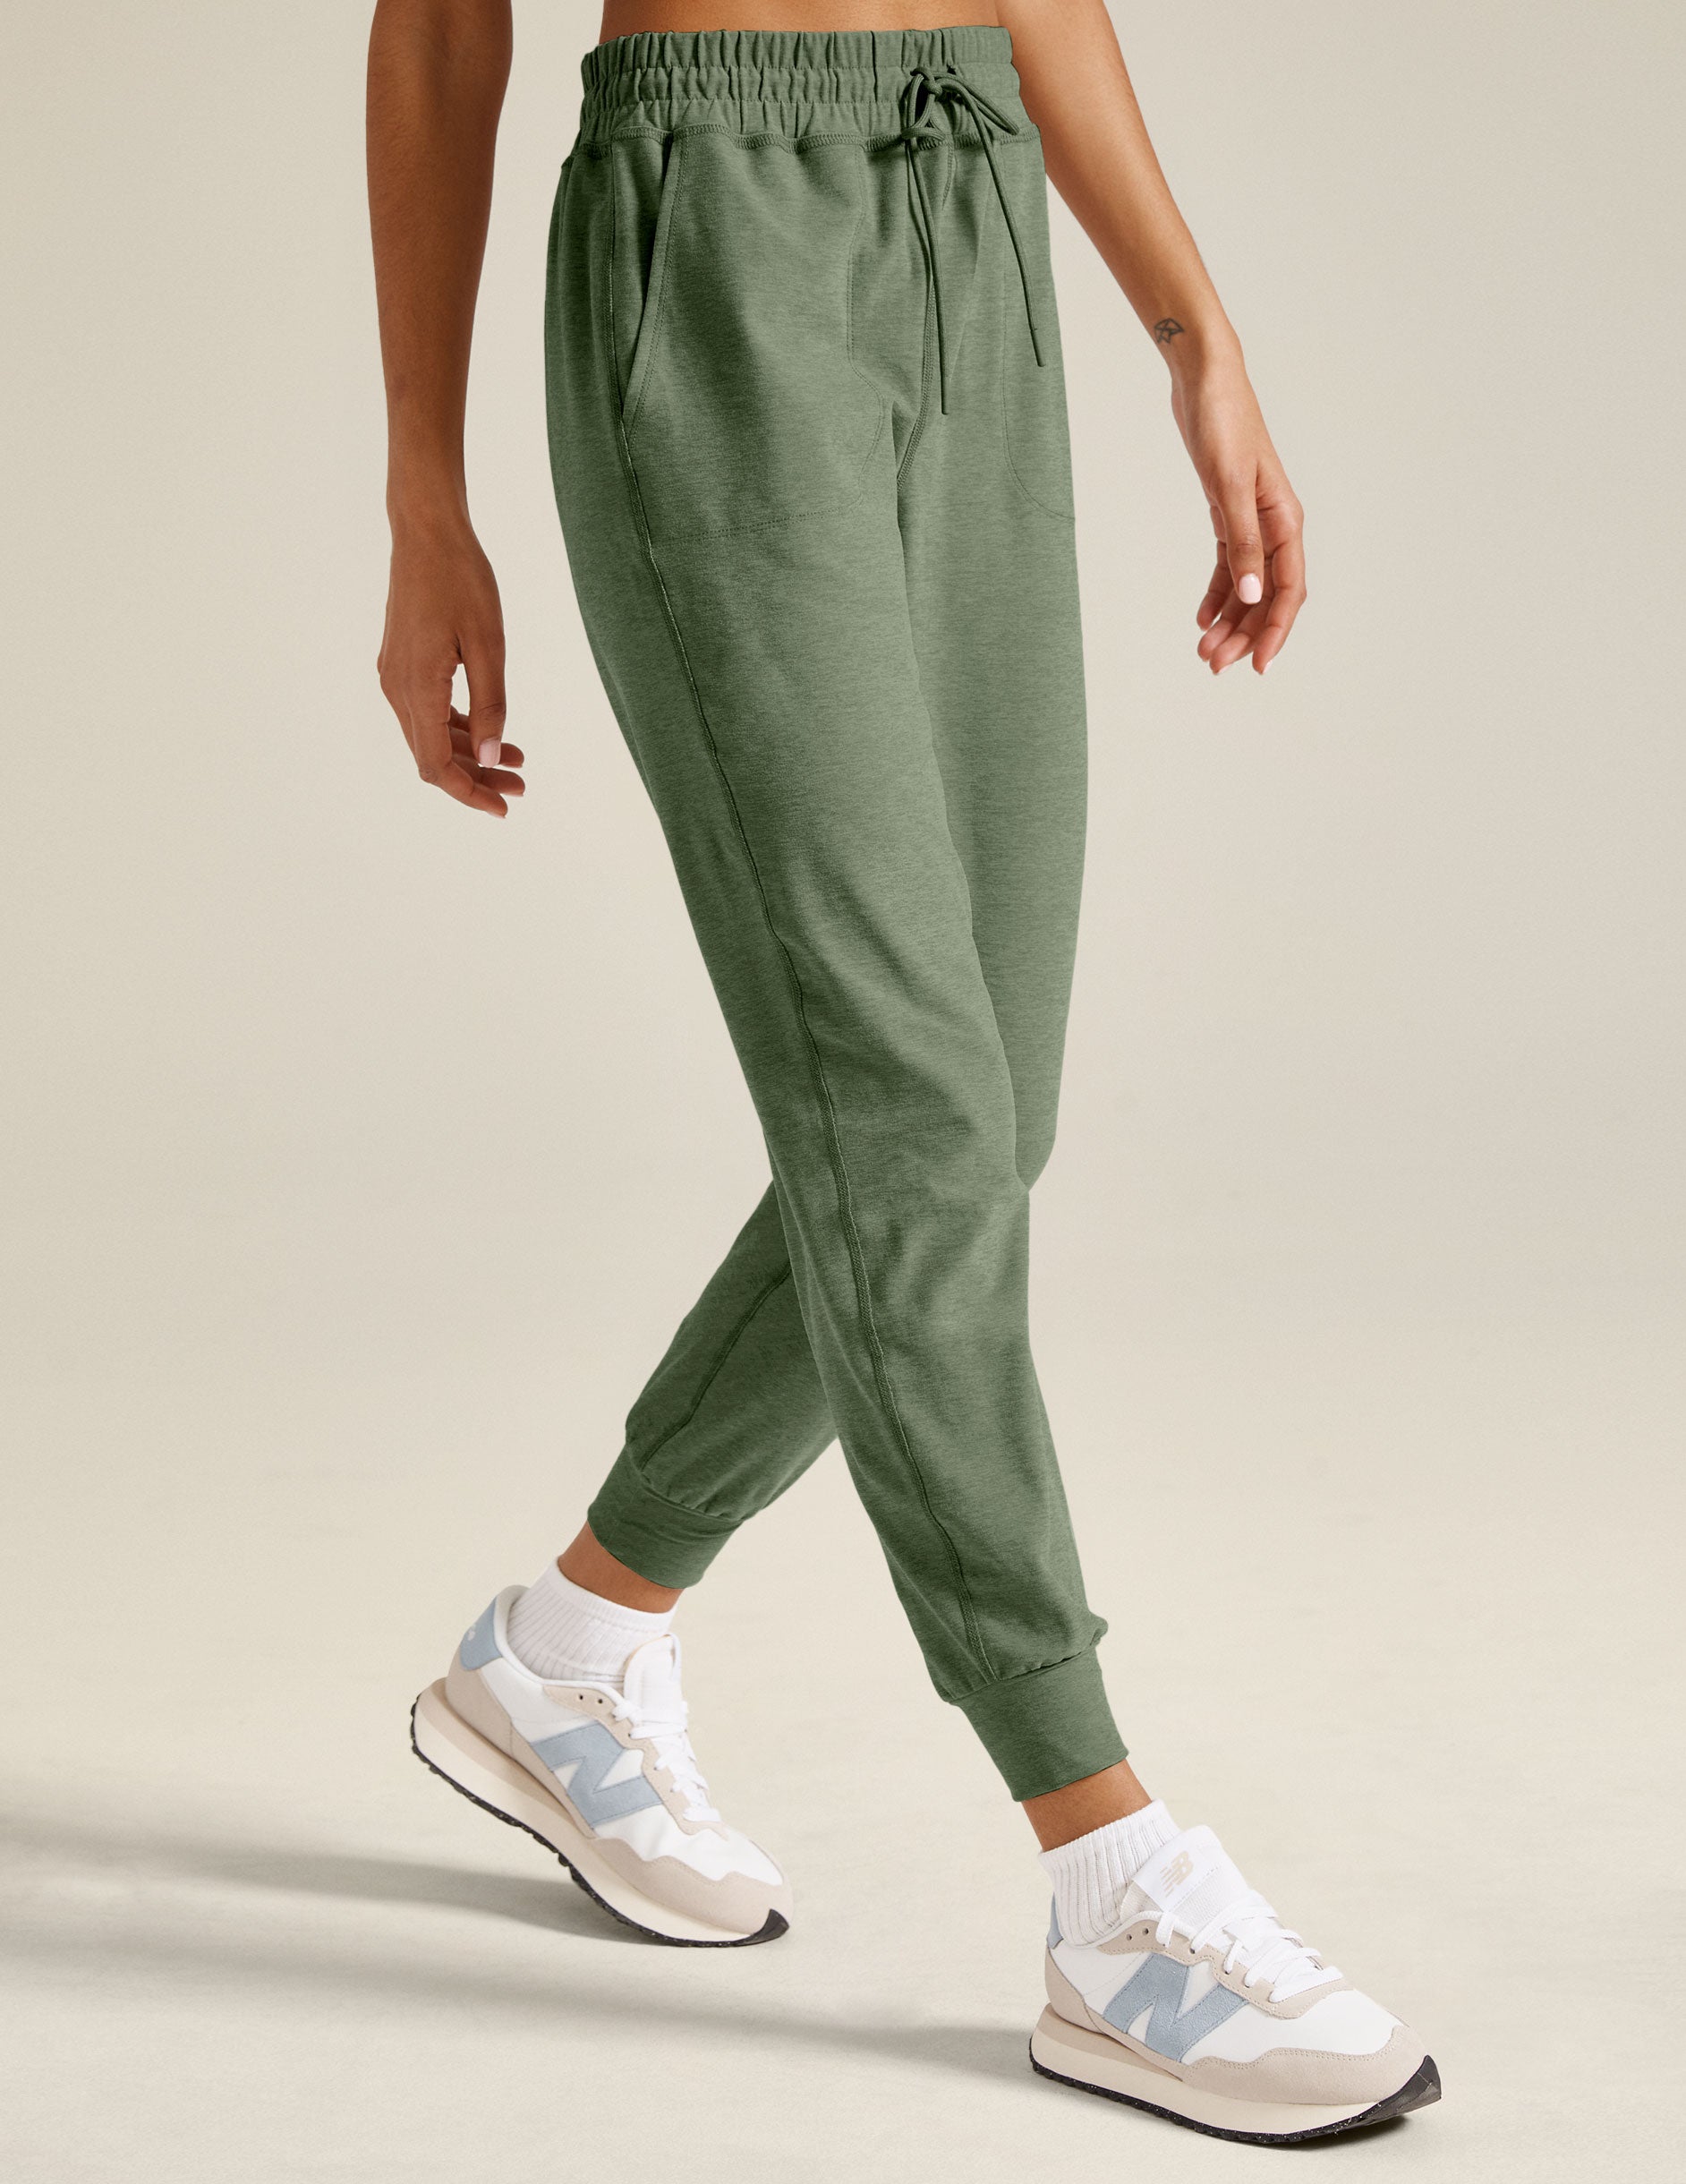 green midi jogger pants with a drawstring at waistband.